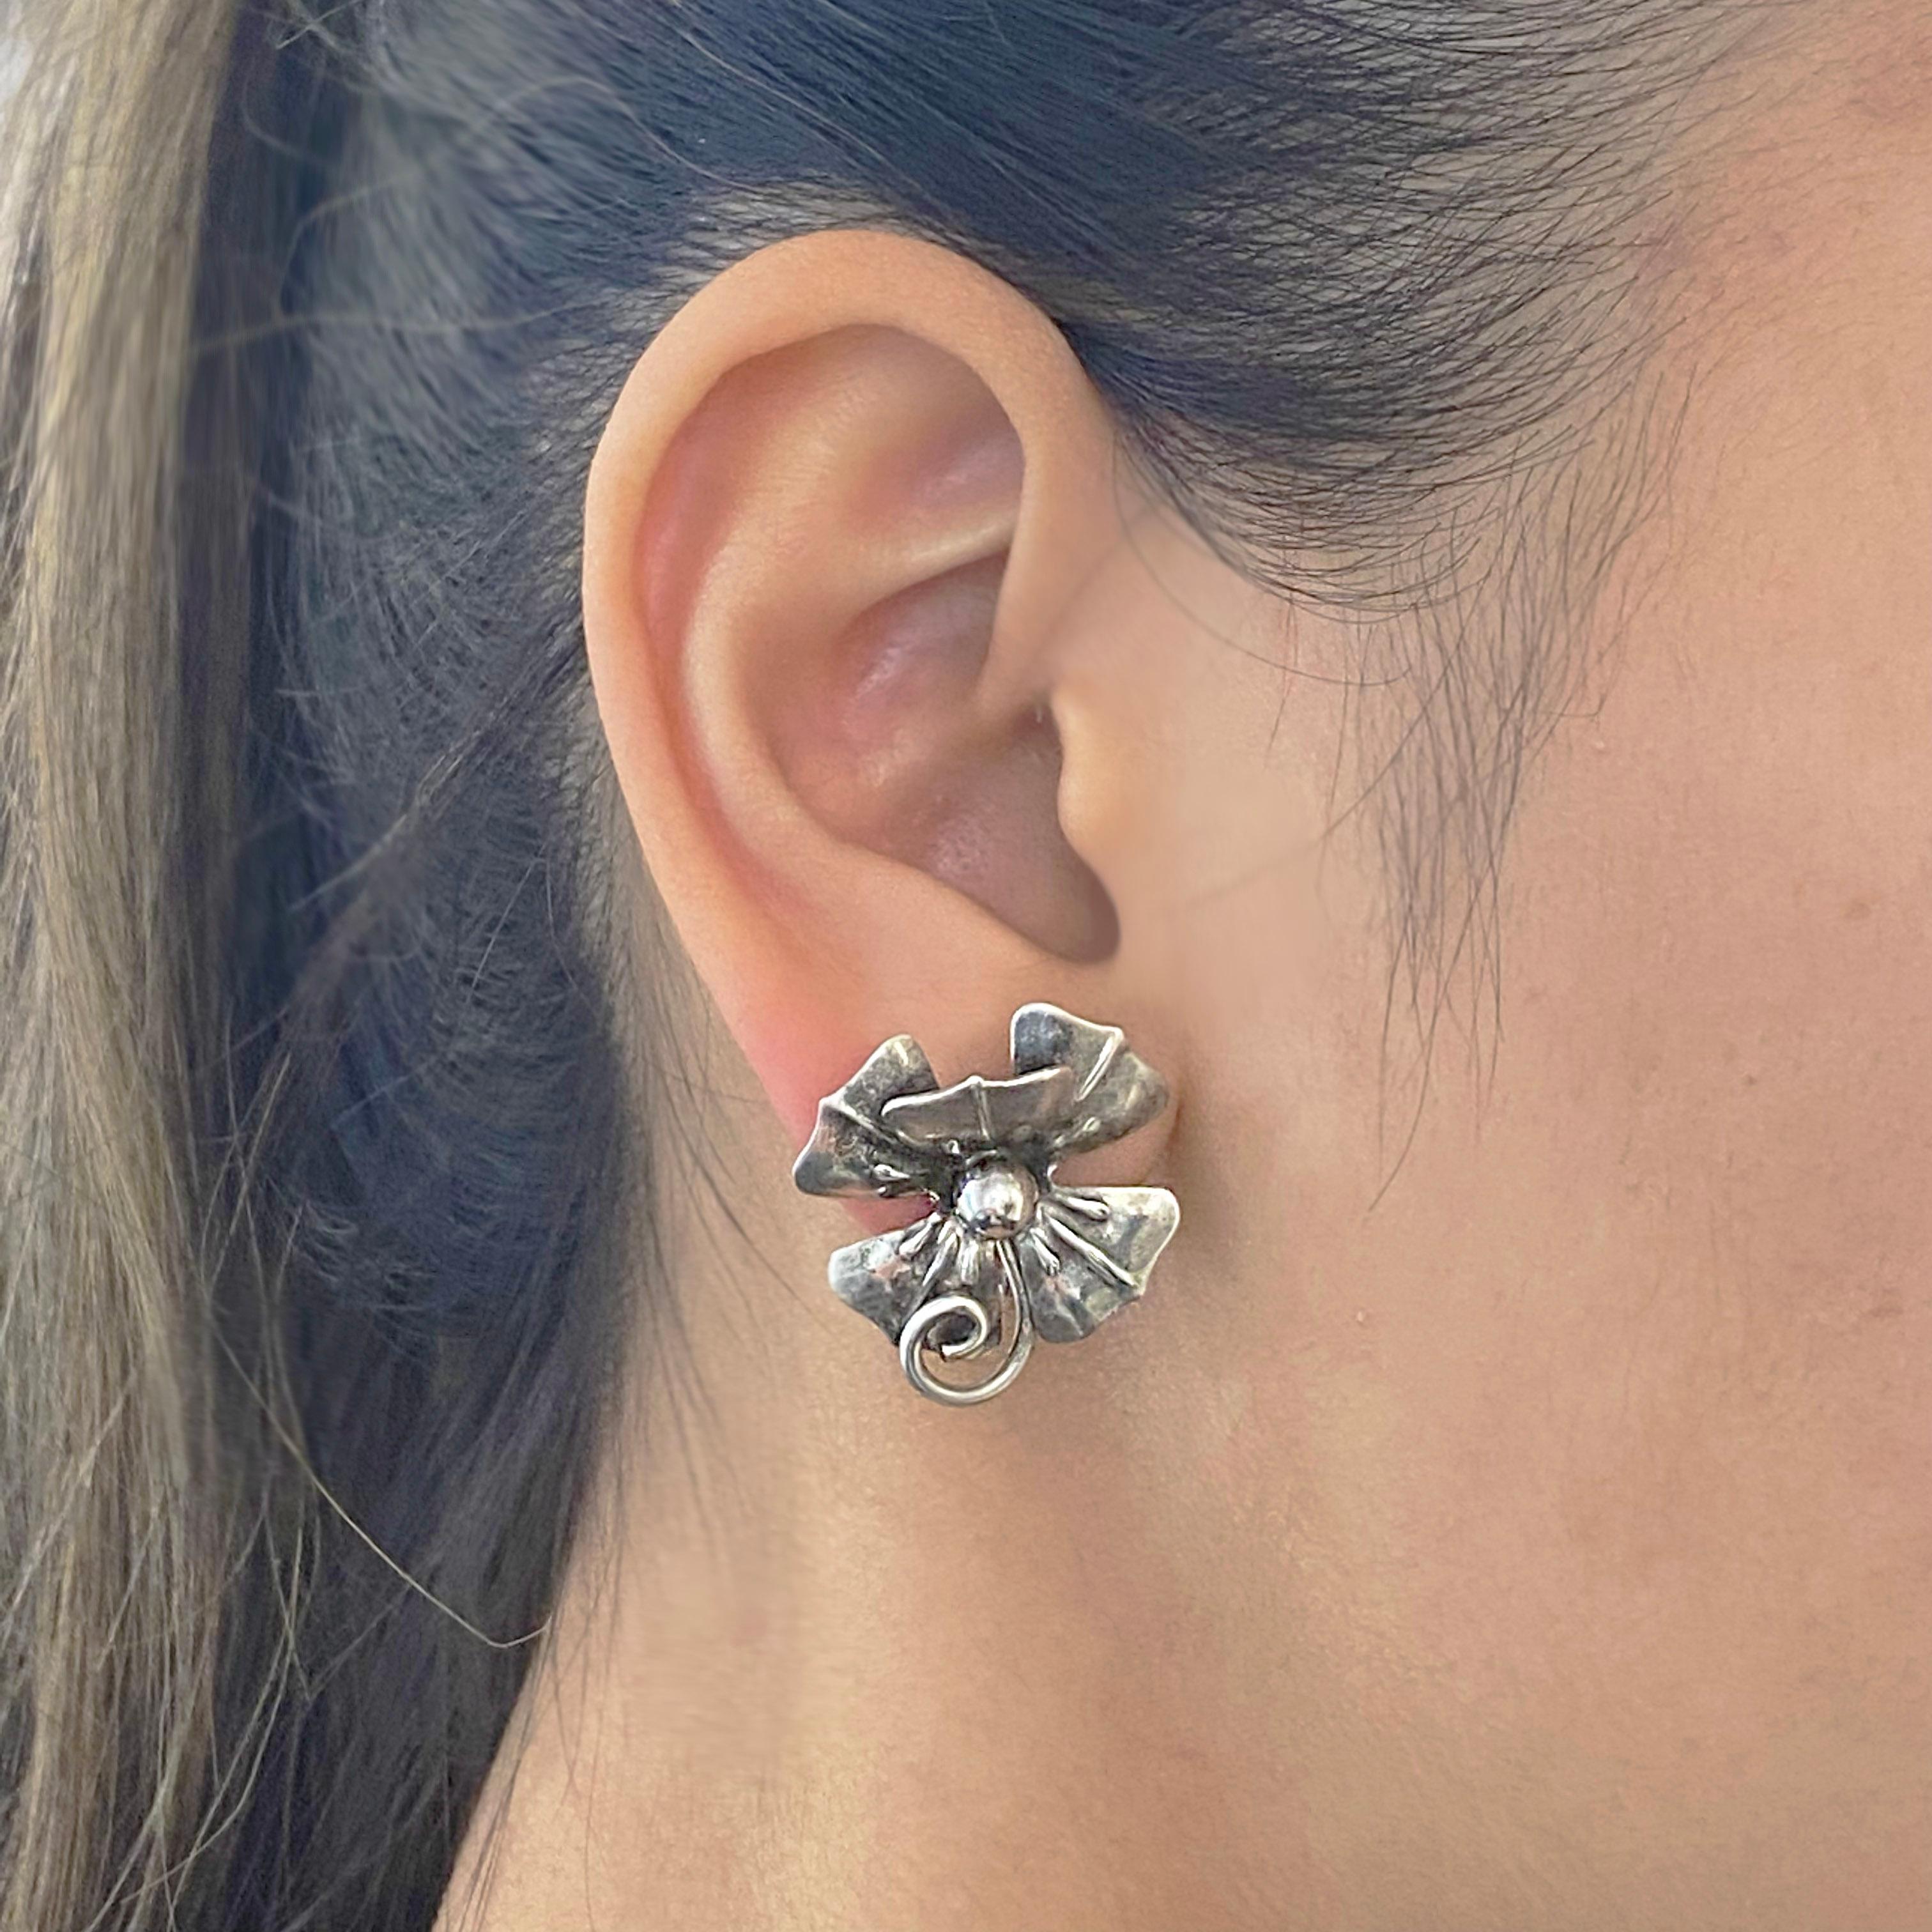 earrings for unpierced ears